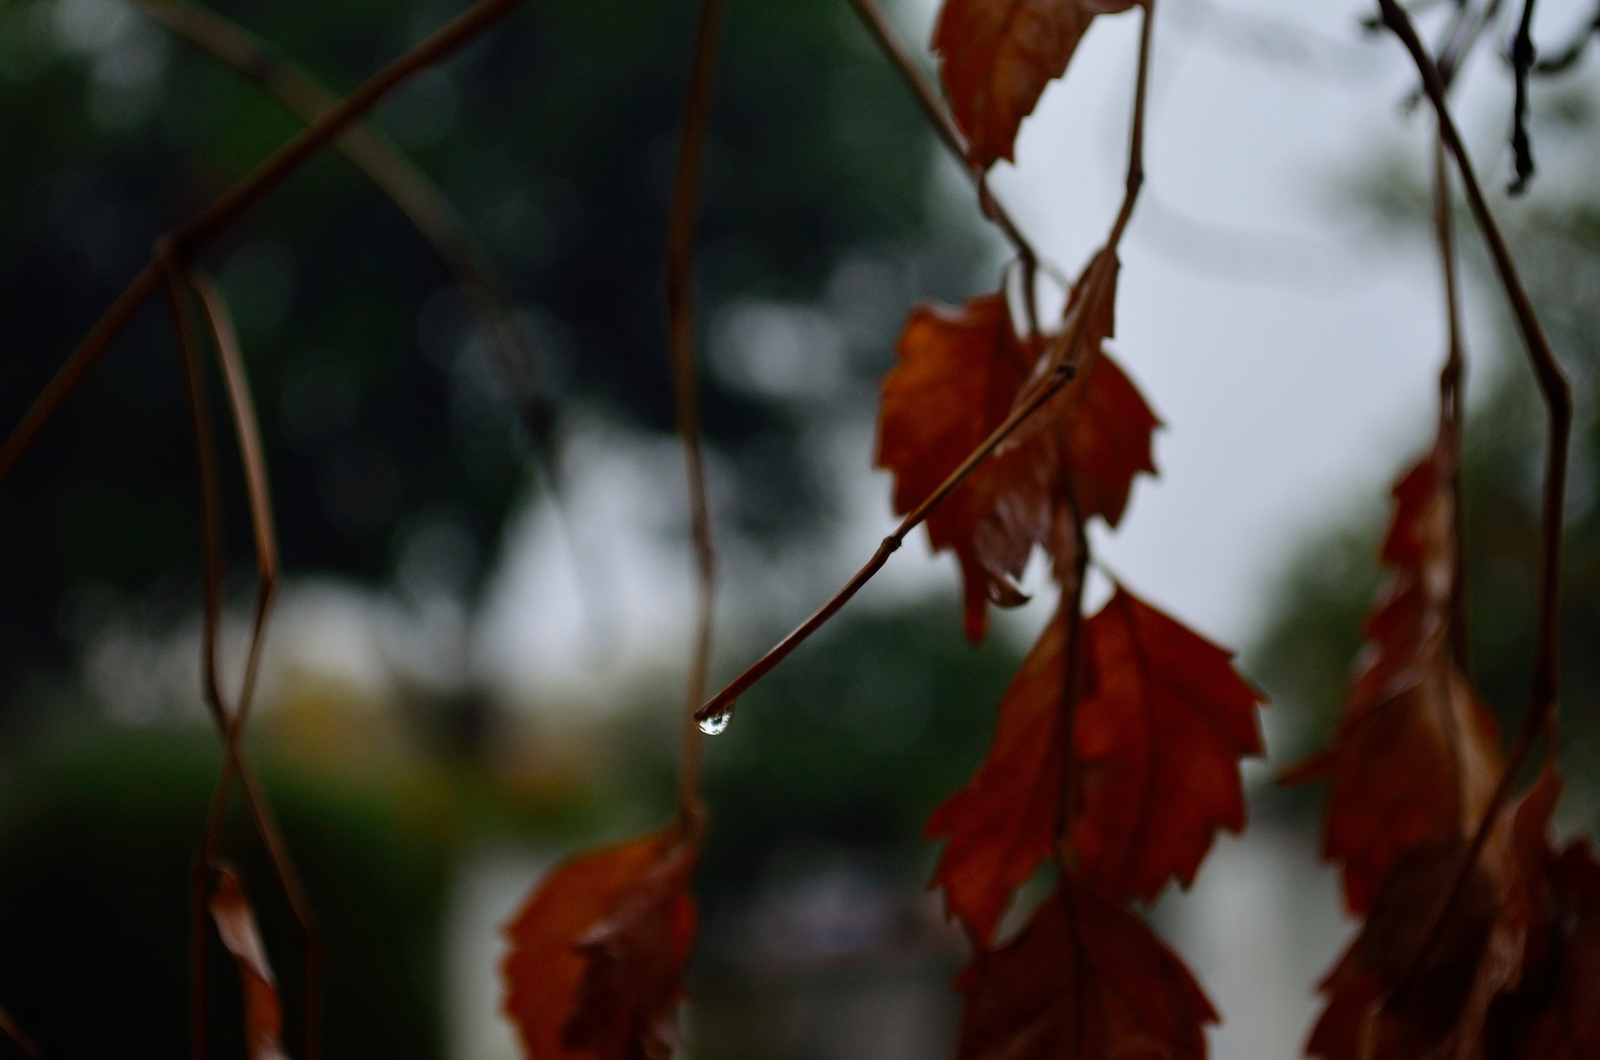 Rain on leaves